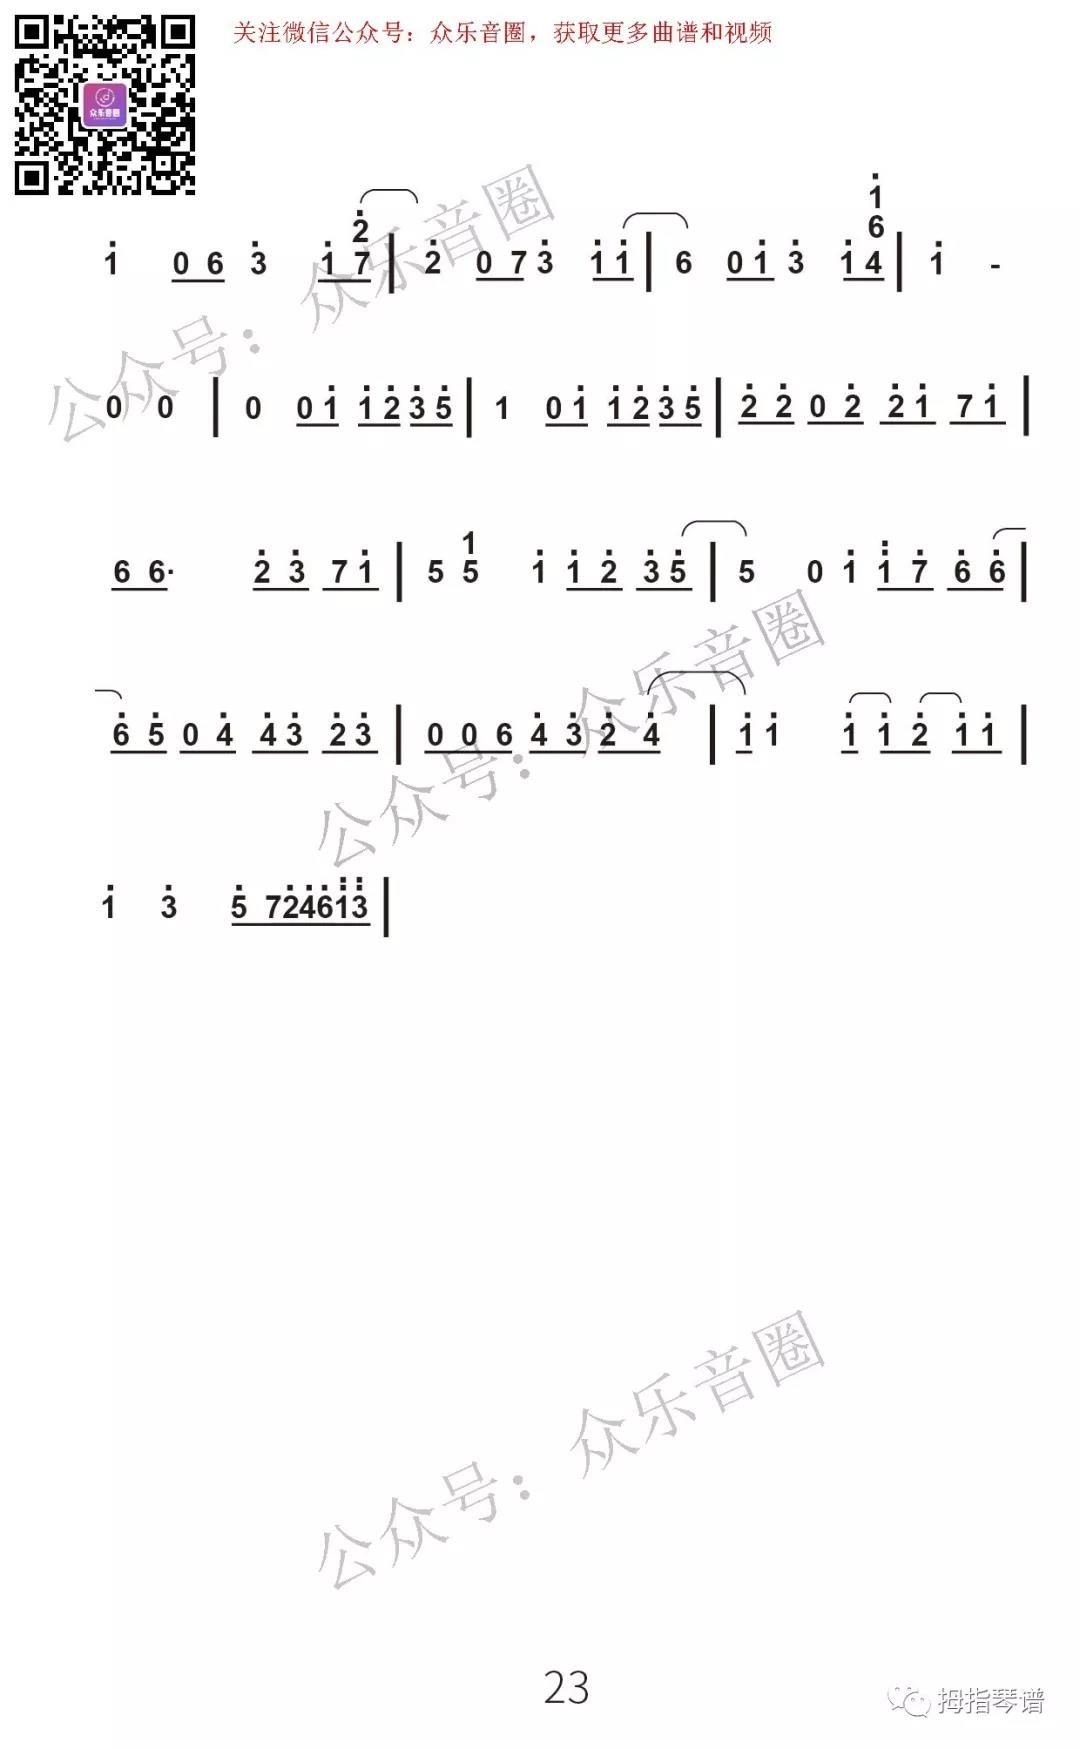 口风琴弹奏曲谱_口风琴乐曲谱(3)